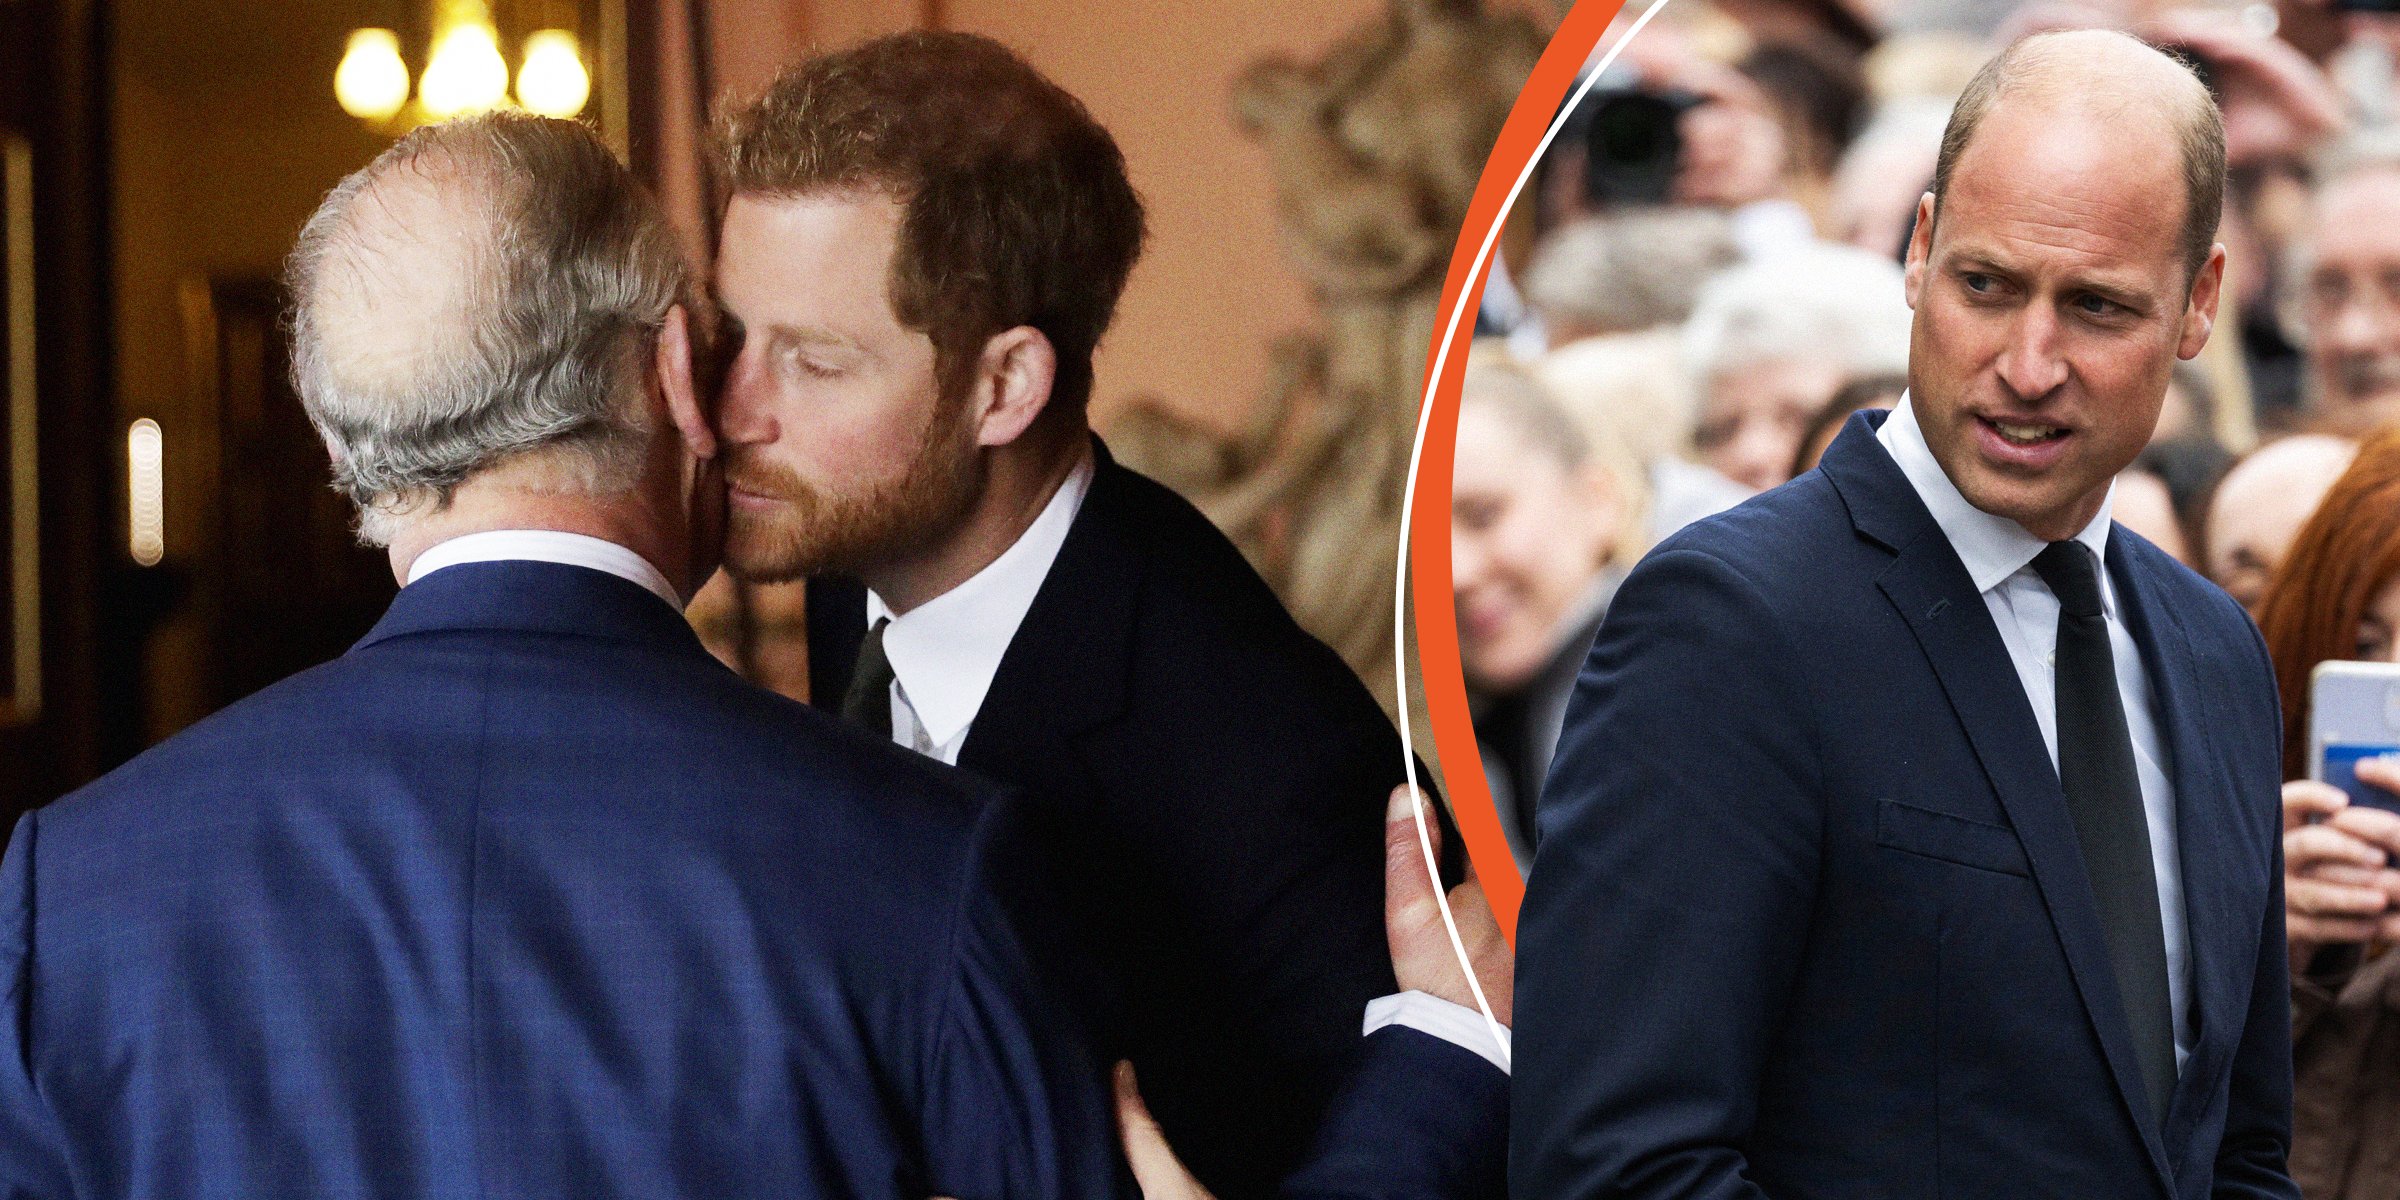 El rey Charles III y el príncipe Harry | Príncipe William. | Foto: Getty Images